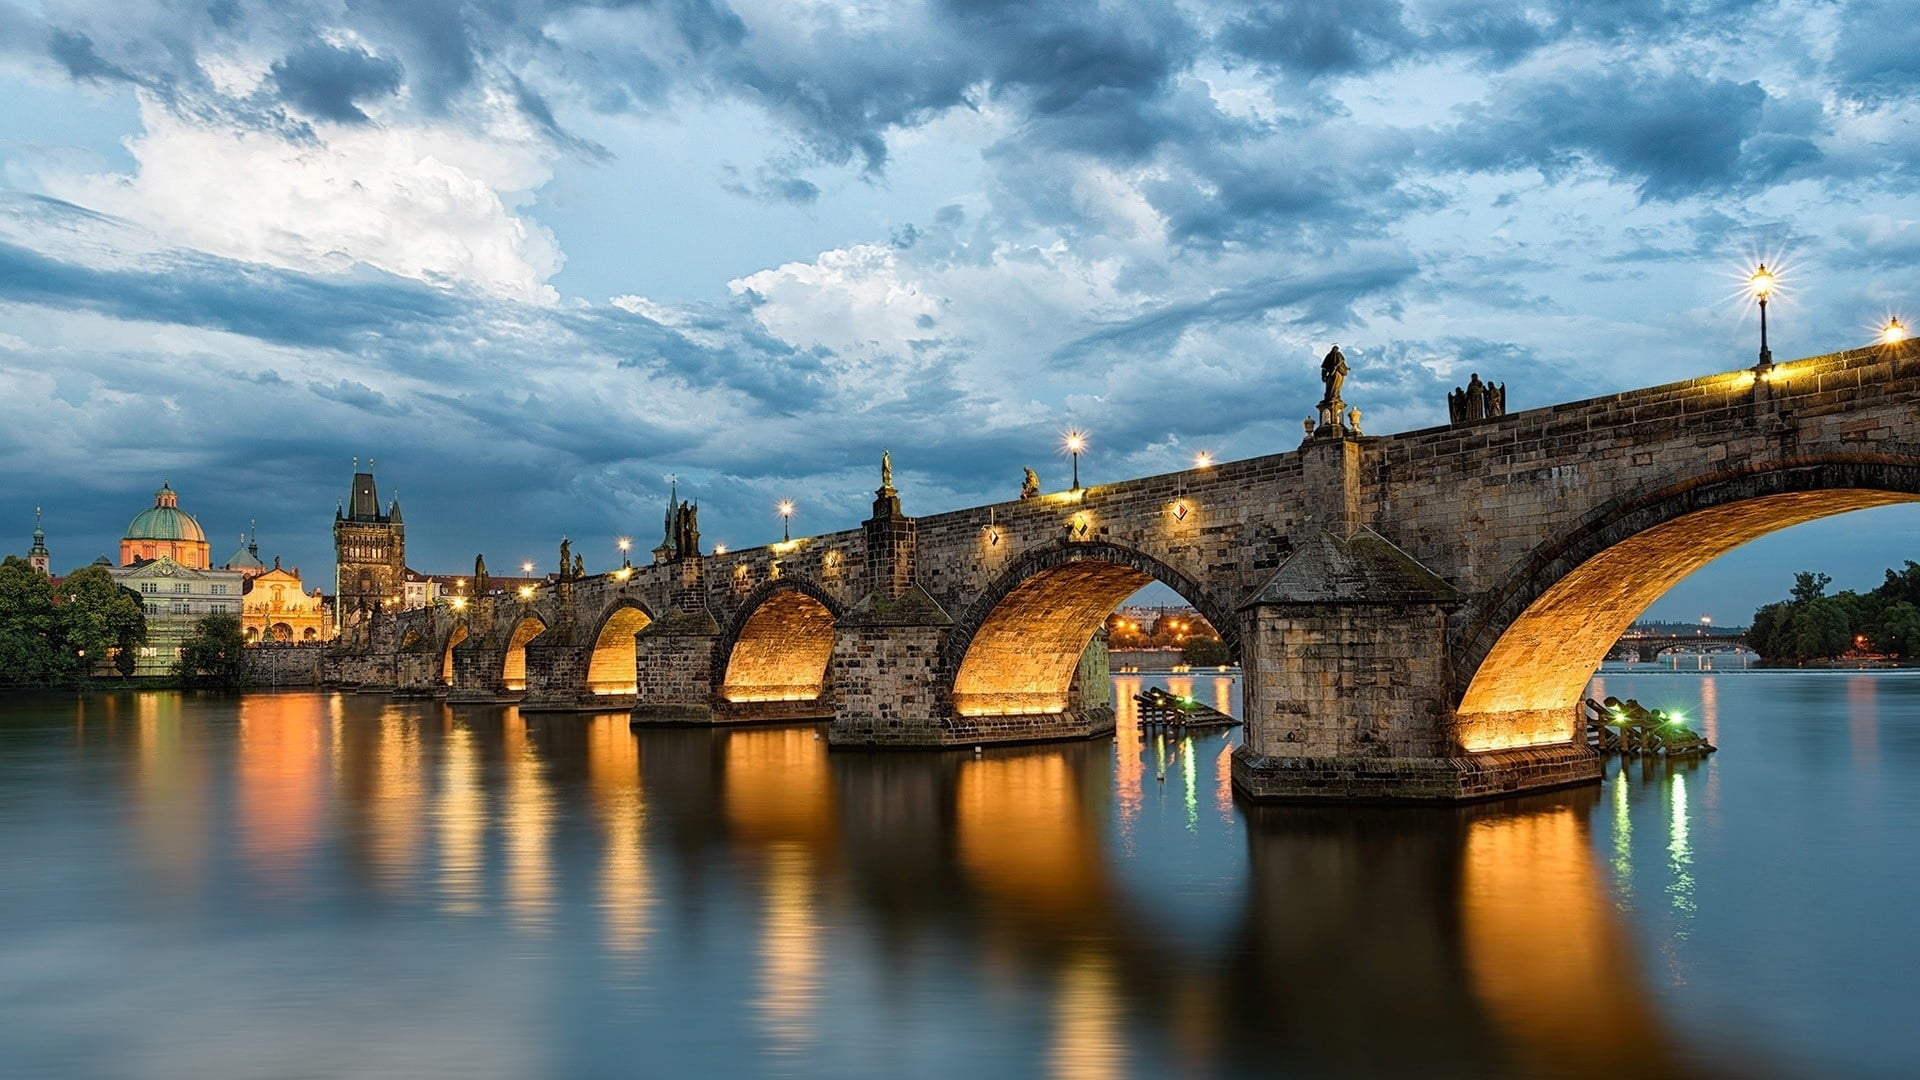 Charles Bridge, Czech Republic, architecture, building, city